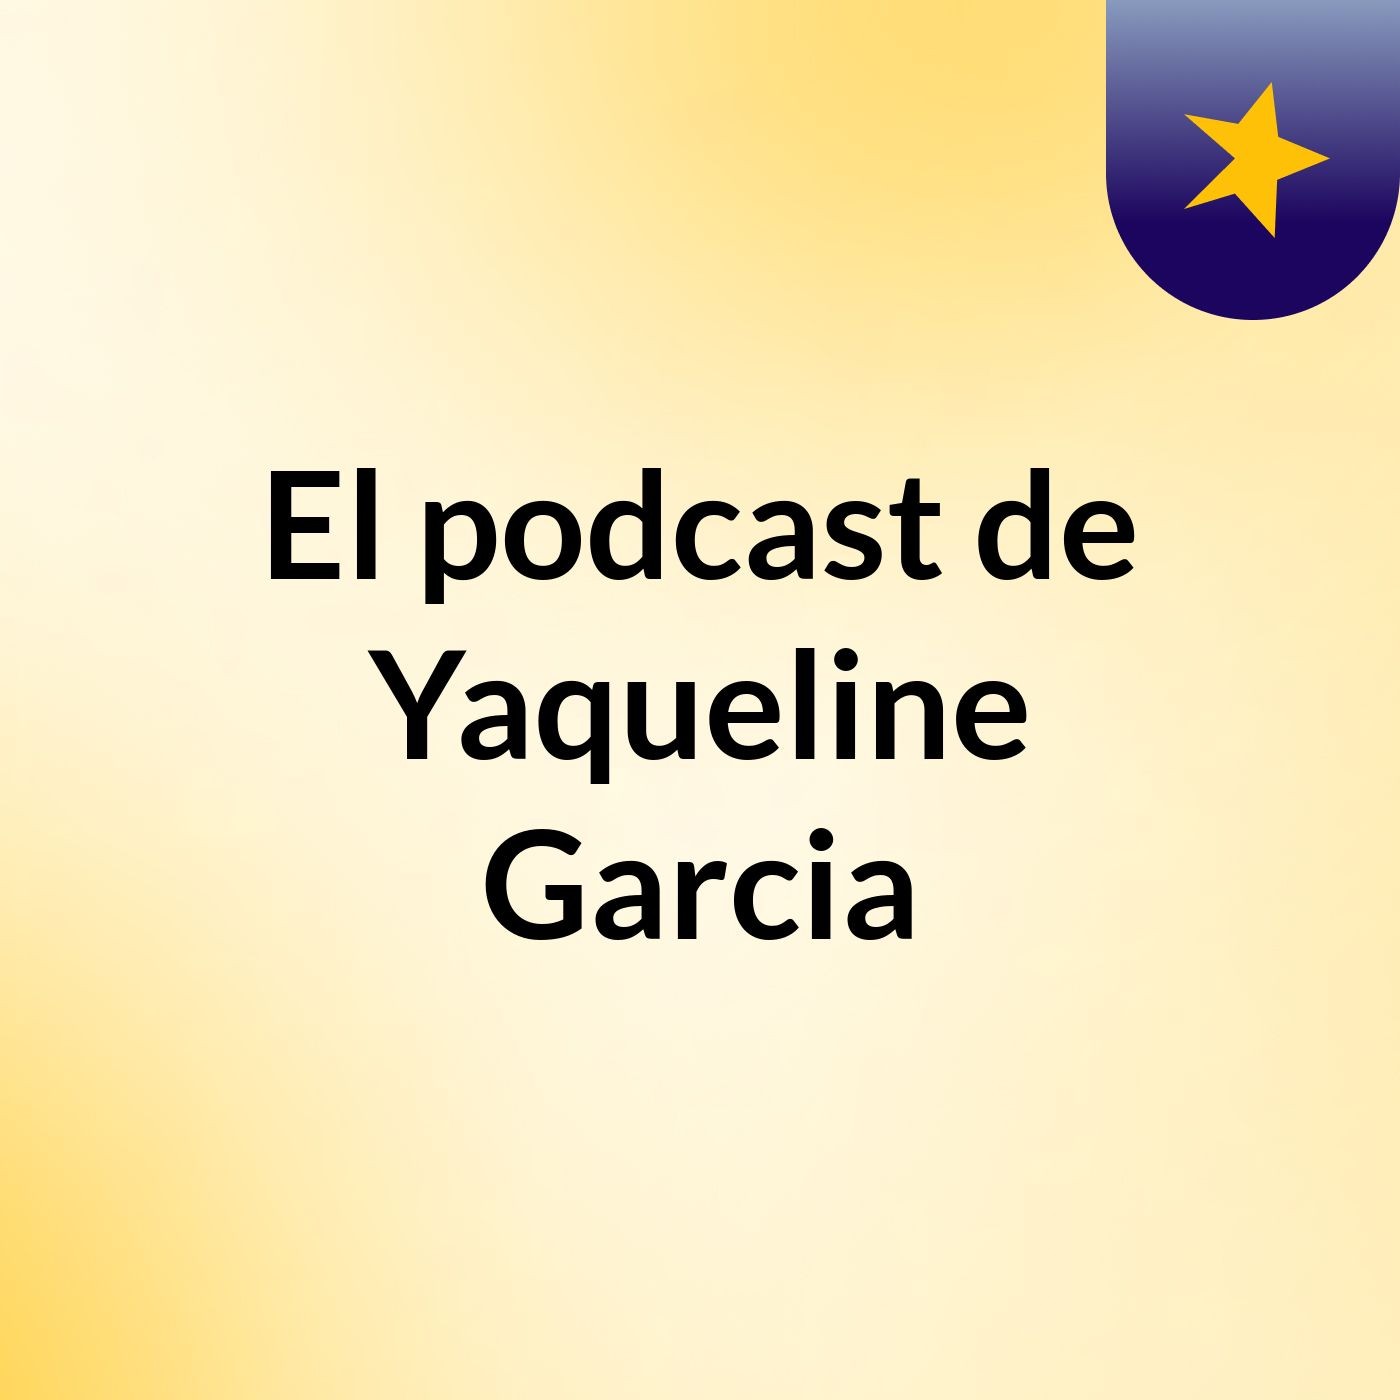 El podcast de Yaqueline Garcia